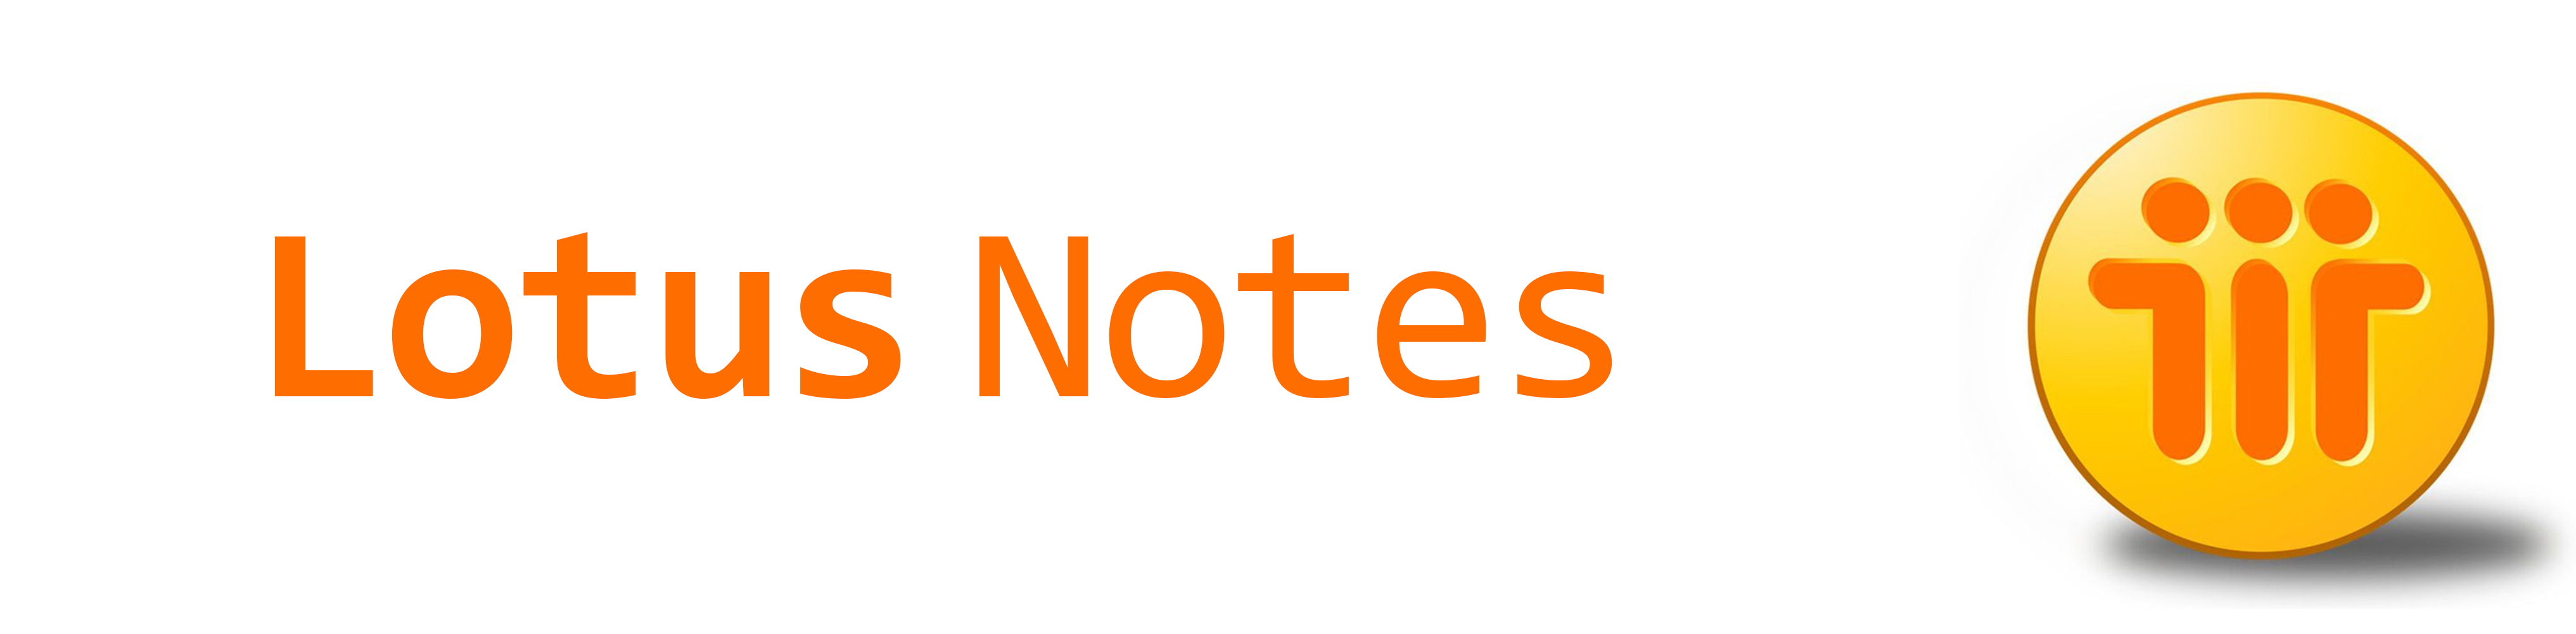 Lotus Notes Viewer Para Mac